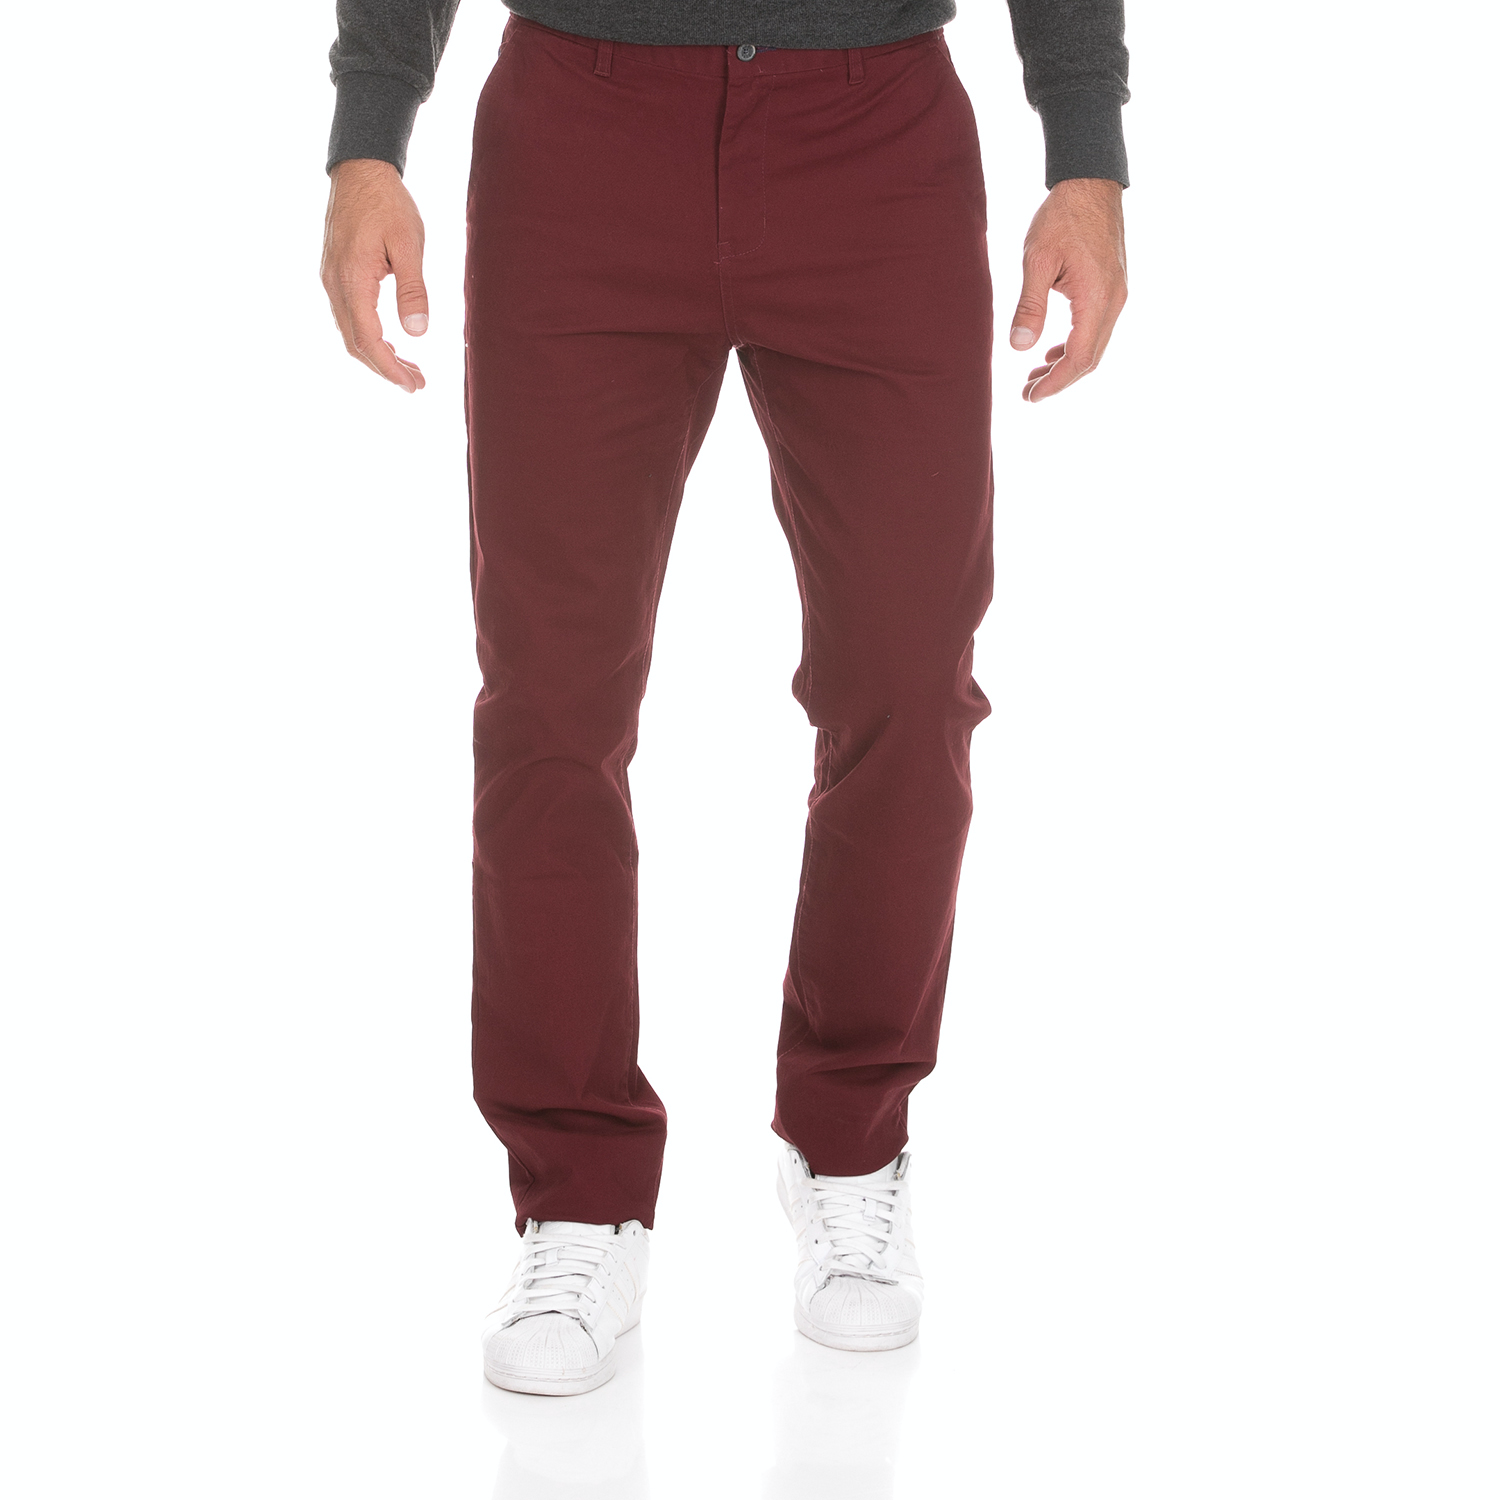 Ανδρικά/Ρούχα/Παντελόνια/Chinos DORS - Ανδρικό chino παντελόνι DORS μπορντό